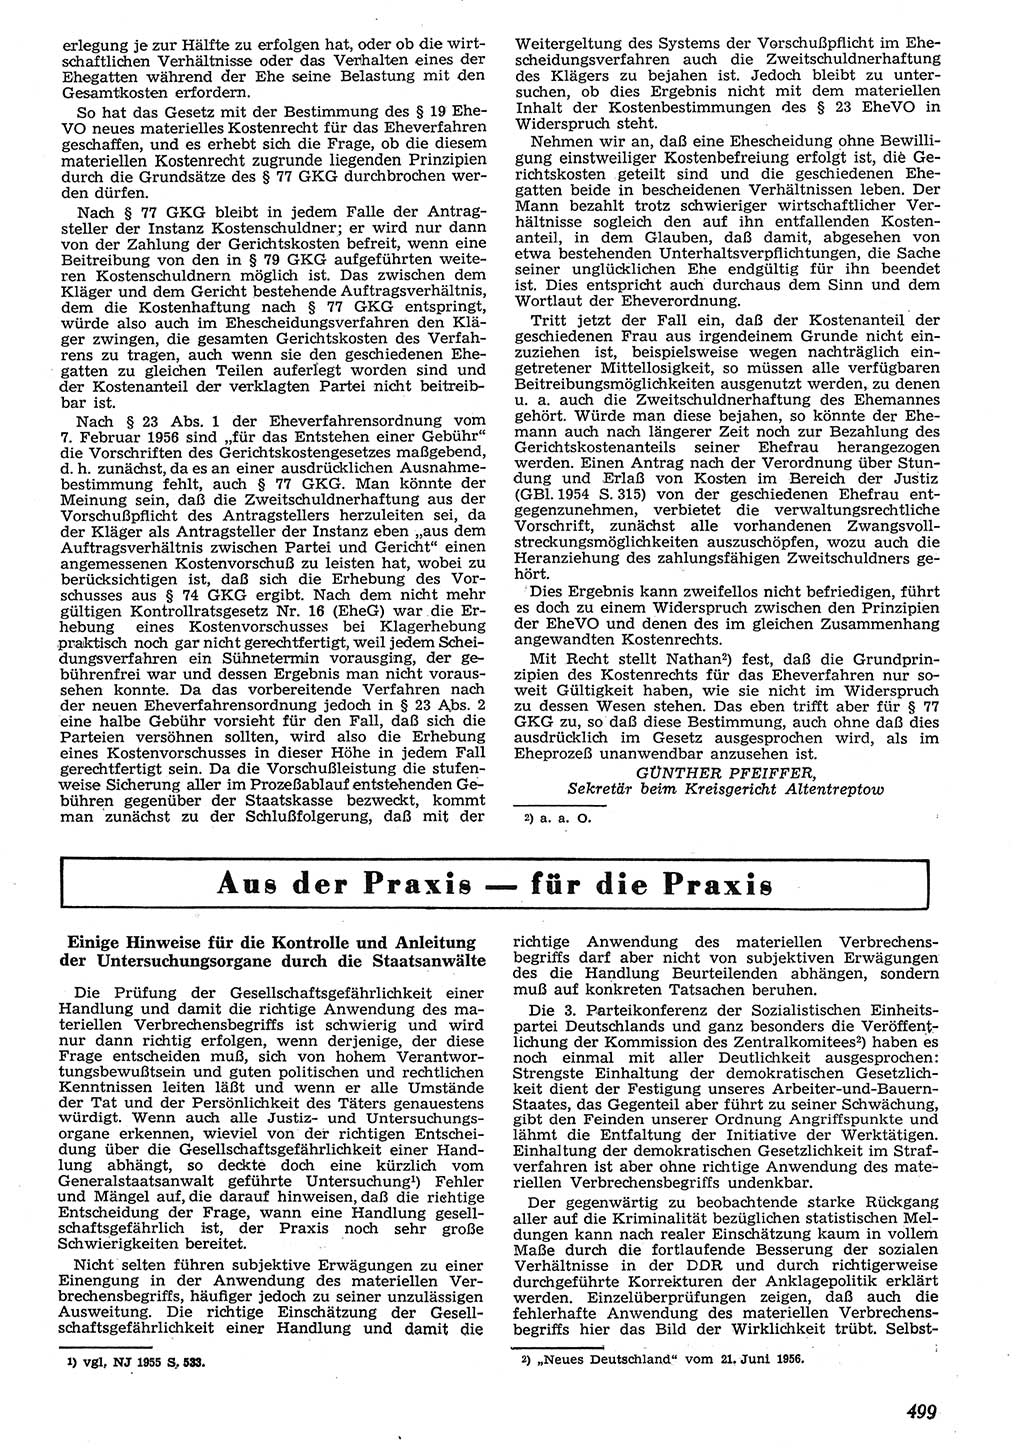 Neue Justiz (NJ), Zeitschrift für Recht und Rechtswissenschaft [Deutsche Demokratische Republik (DDR)], 10. Jahrgang 1956, Seite 499 (NJ DDR 1956, S. 499)